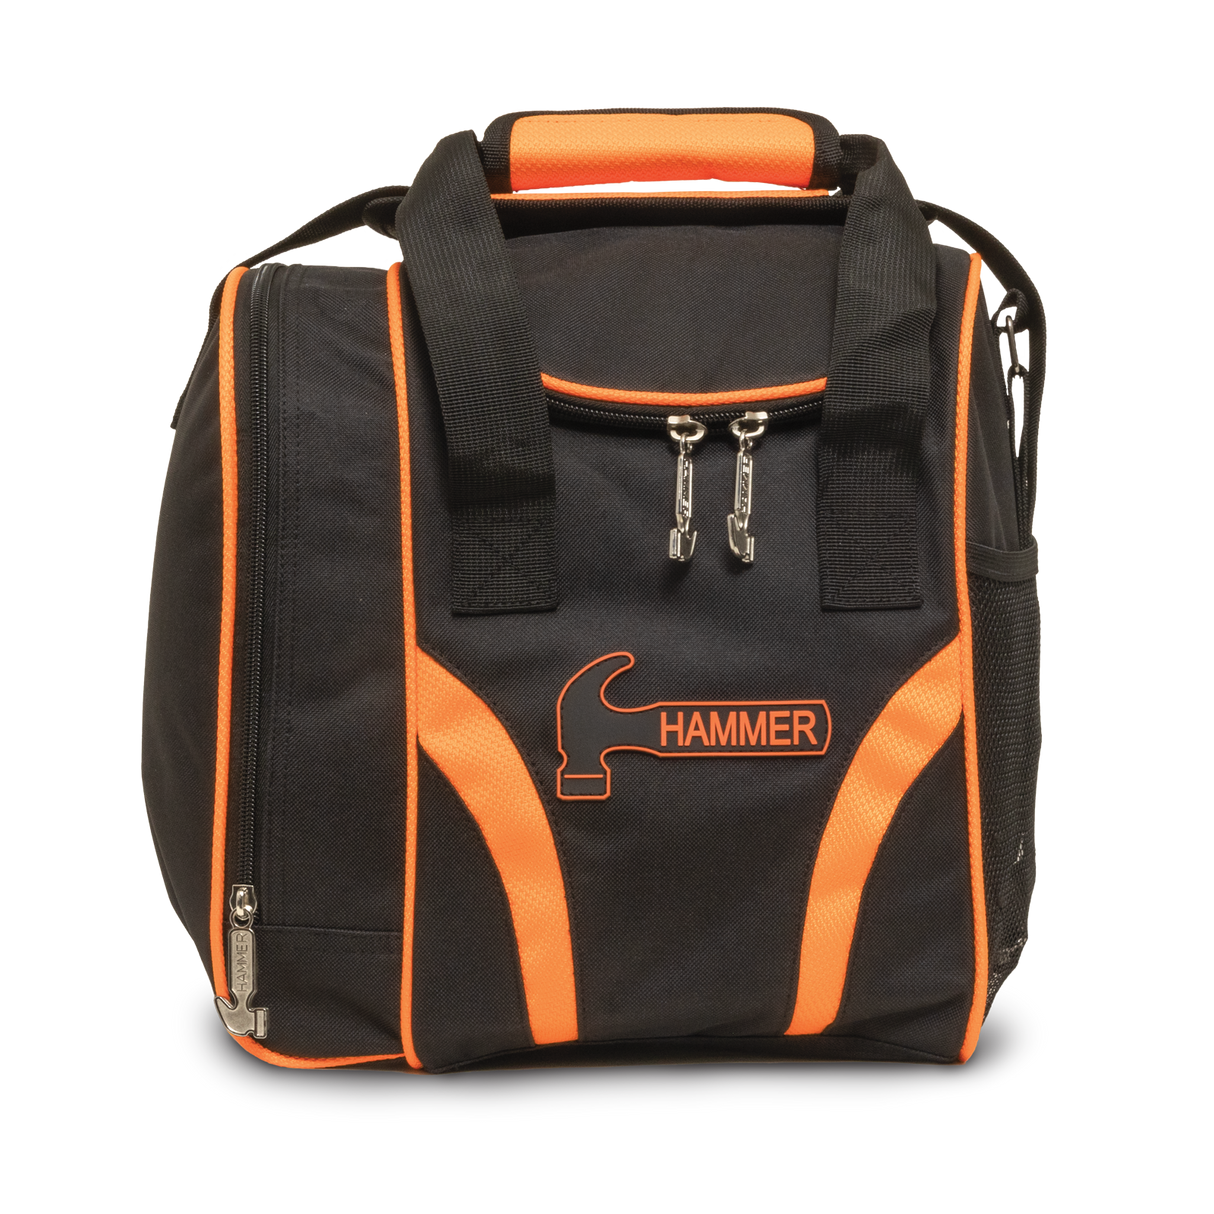 Hammer Tough 1 Ball Single Tote Orange Bowling Bag suitcase league tournament play sale discount coupon online pba tour